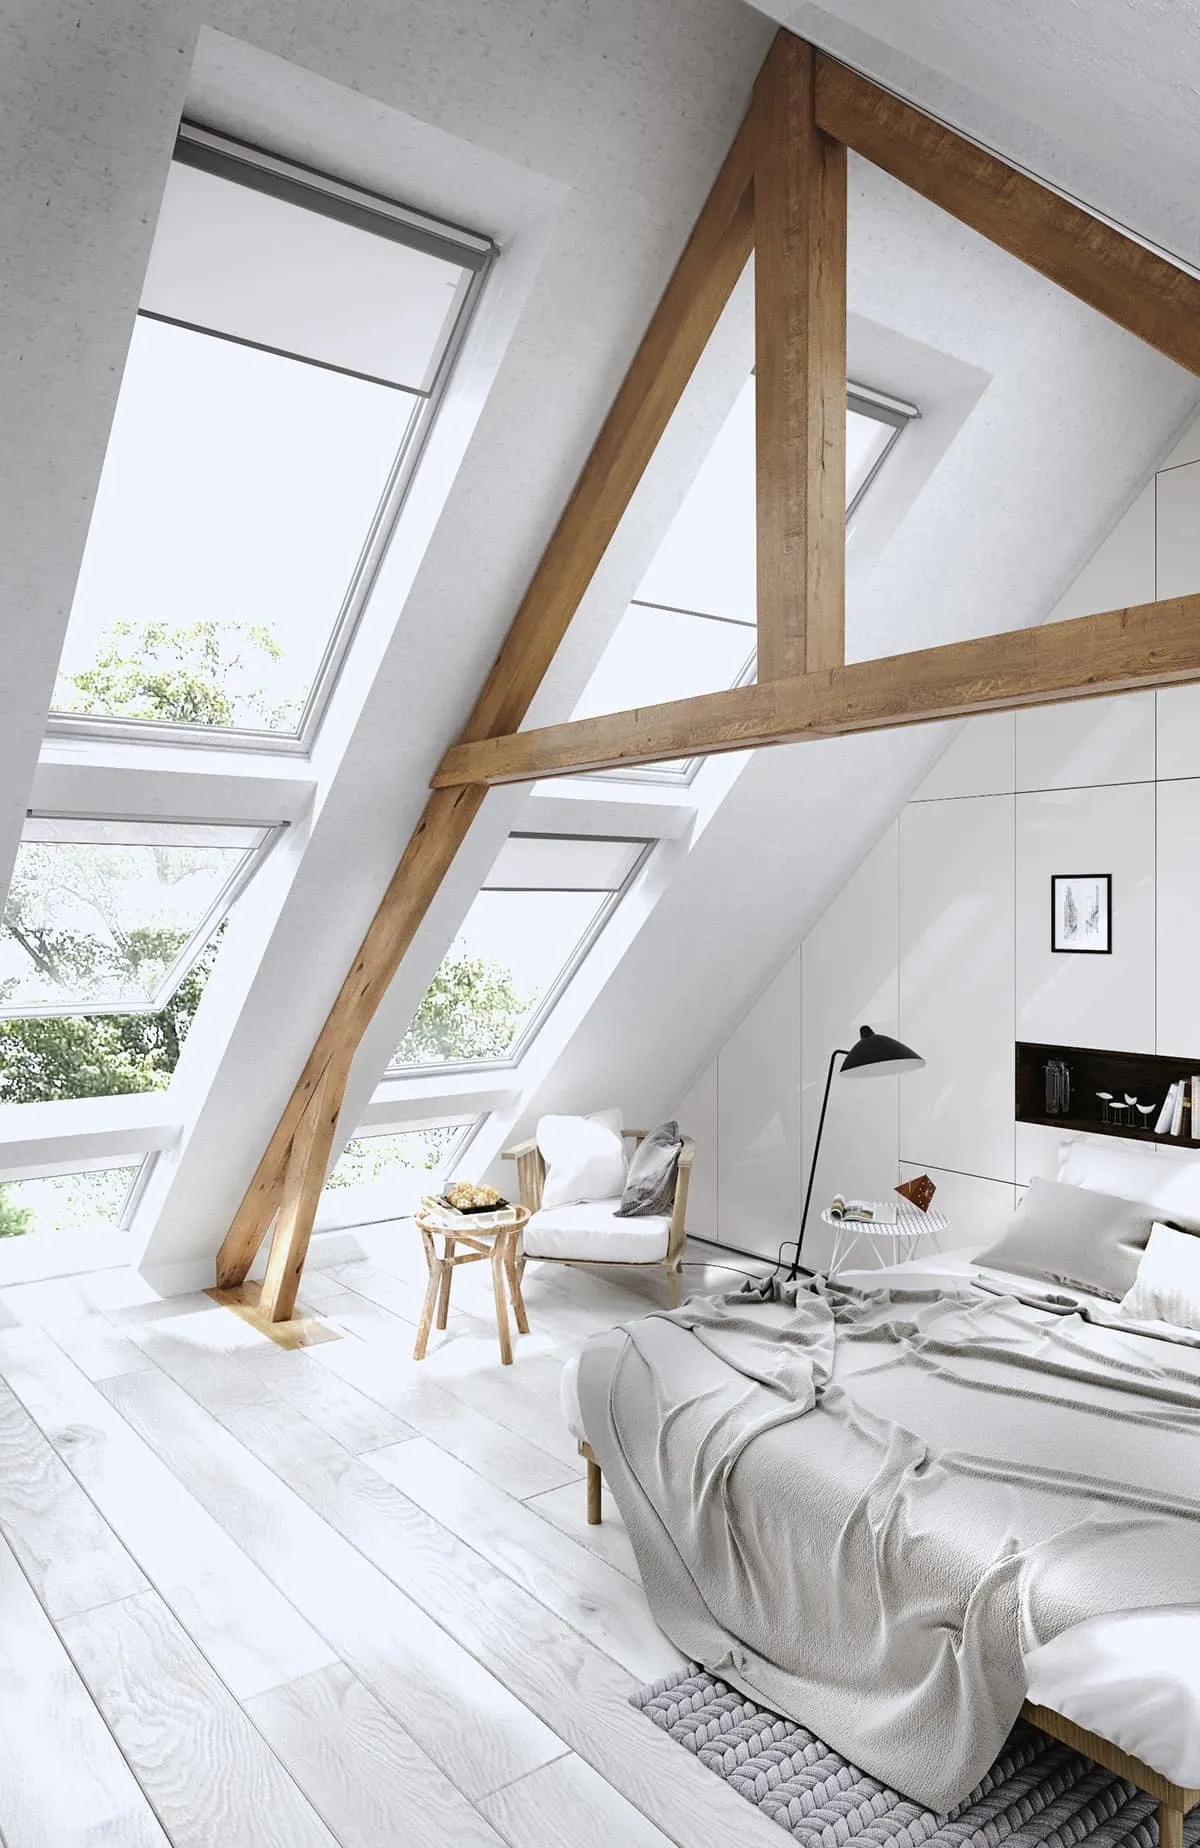 Белая спальня смотрится стильно, если эту монохромную гамму разбавляет эффектный элемент декора, например деревянные балки